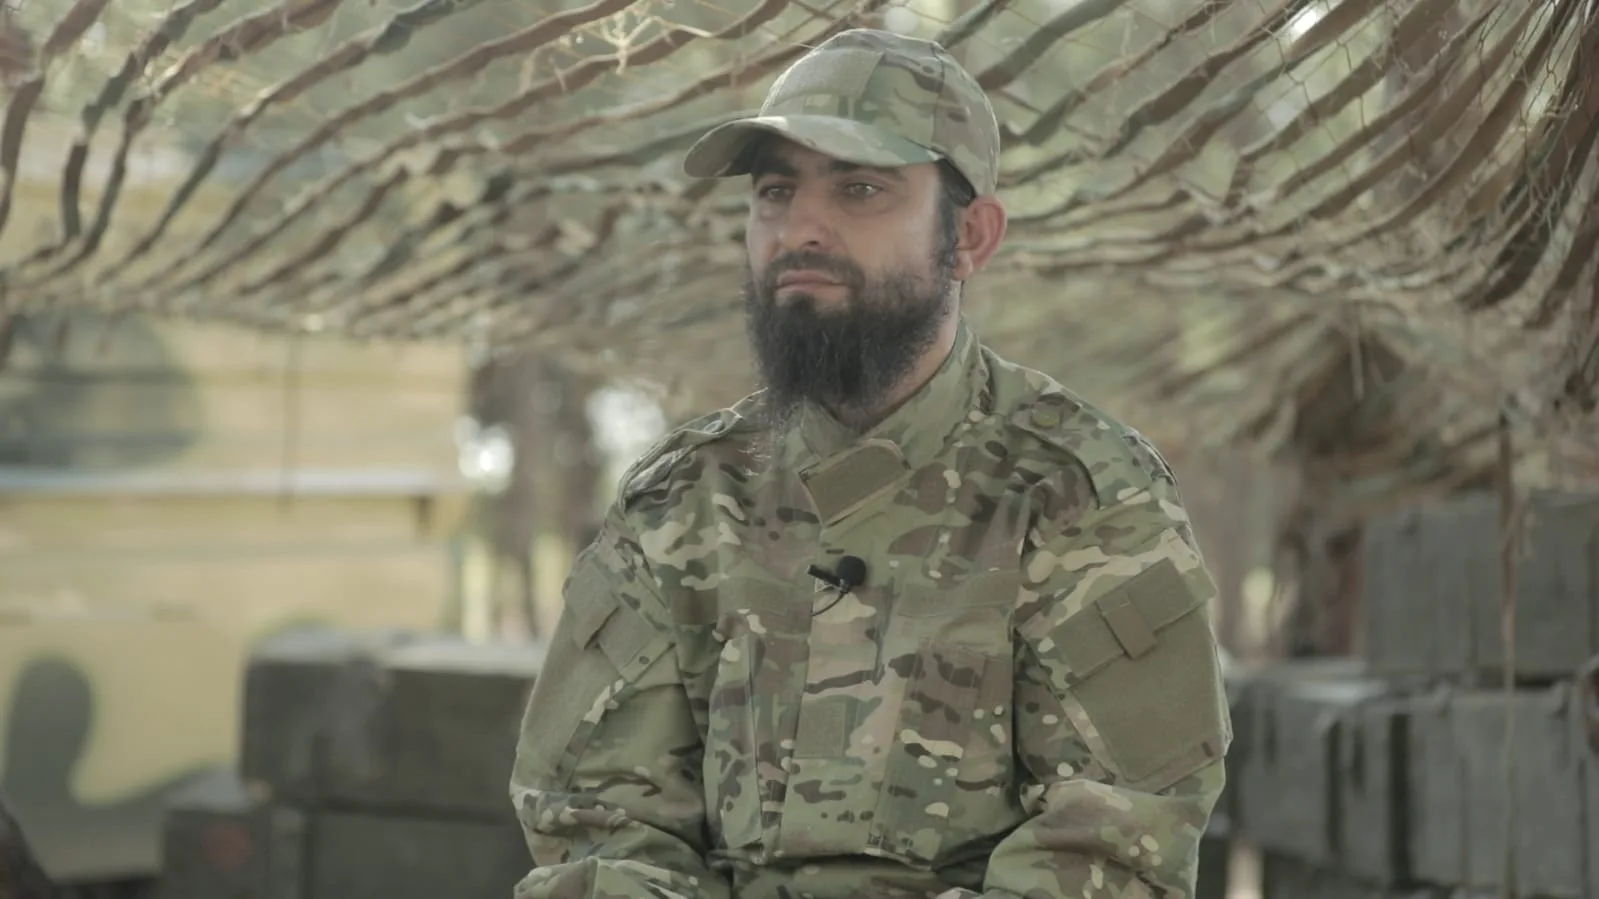 أبو مسلم الشامي - قائد عسكري في هيئة تحرير الشام